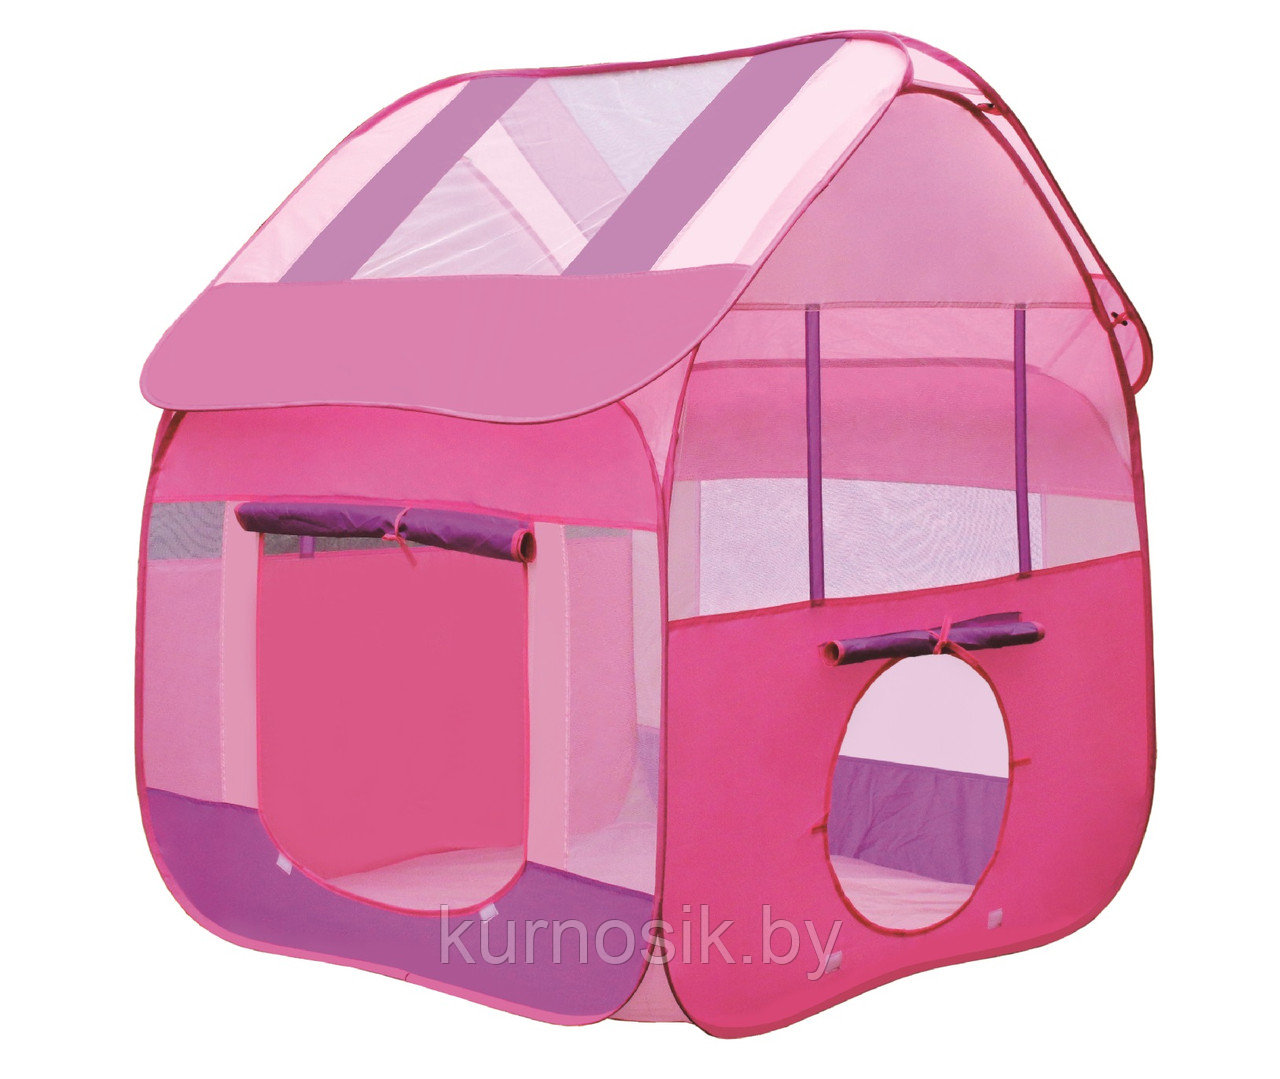 Детская игровая палатка AUSINI Розовый домик, RE5104P